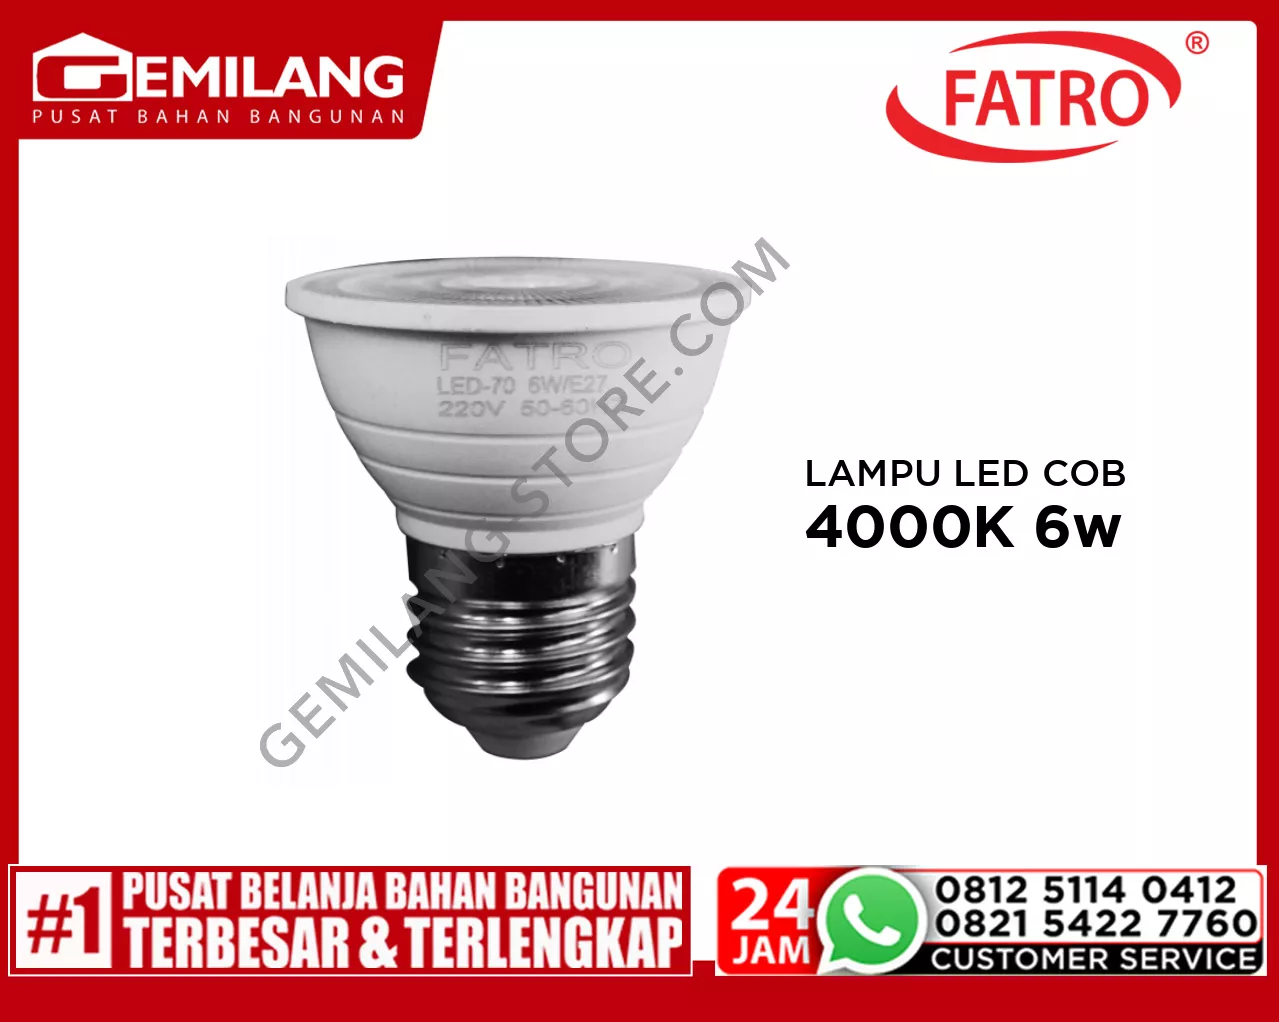 FATRO LAMPU LED COB E27 4000K 6w